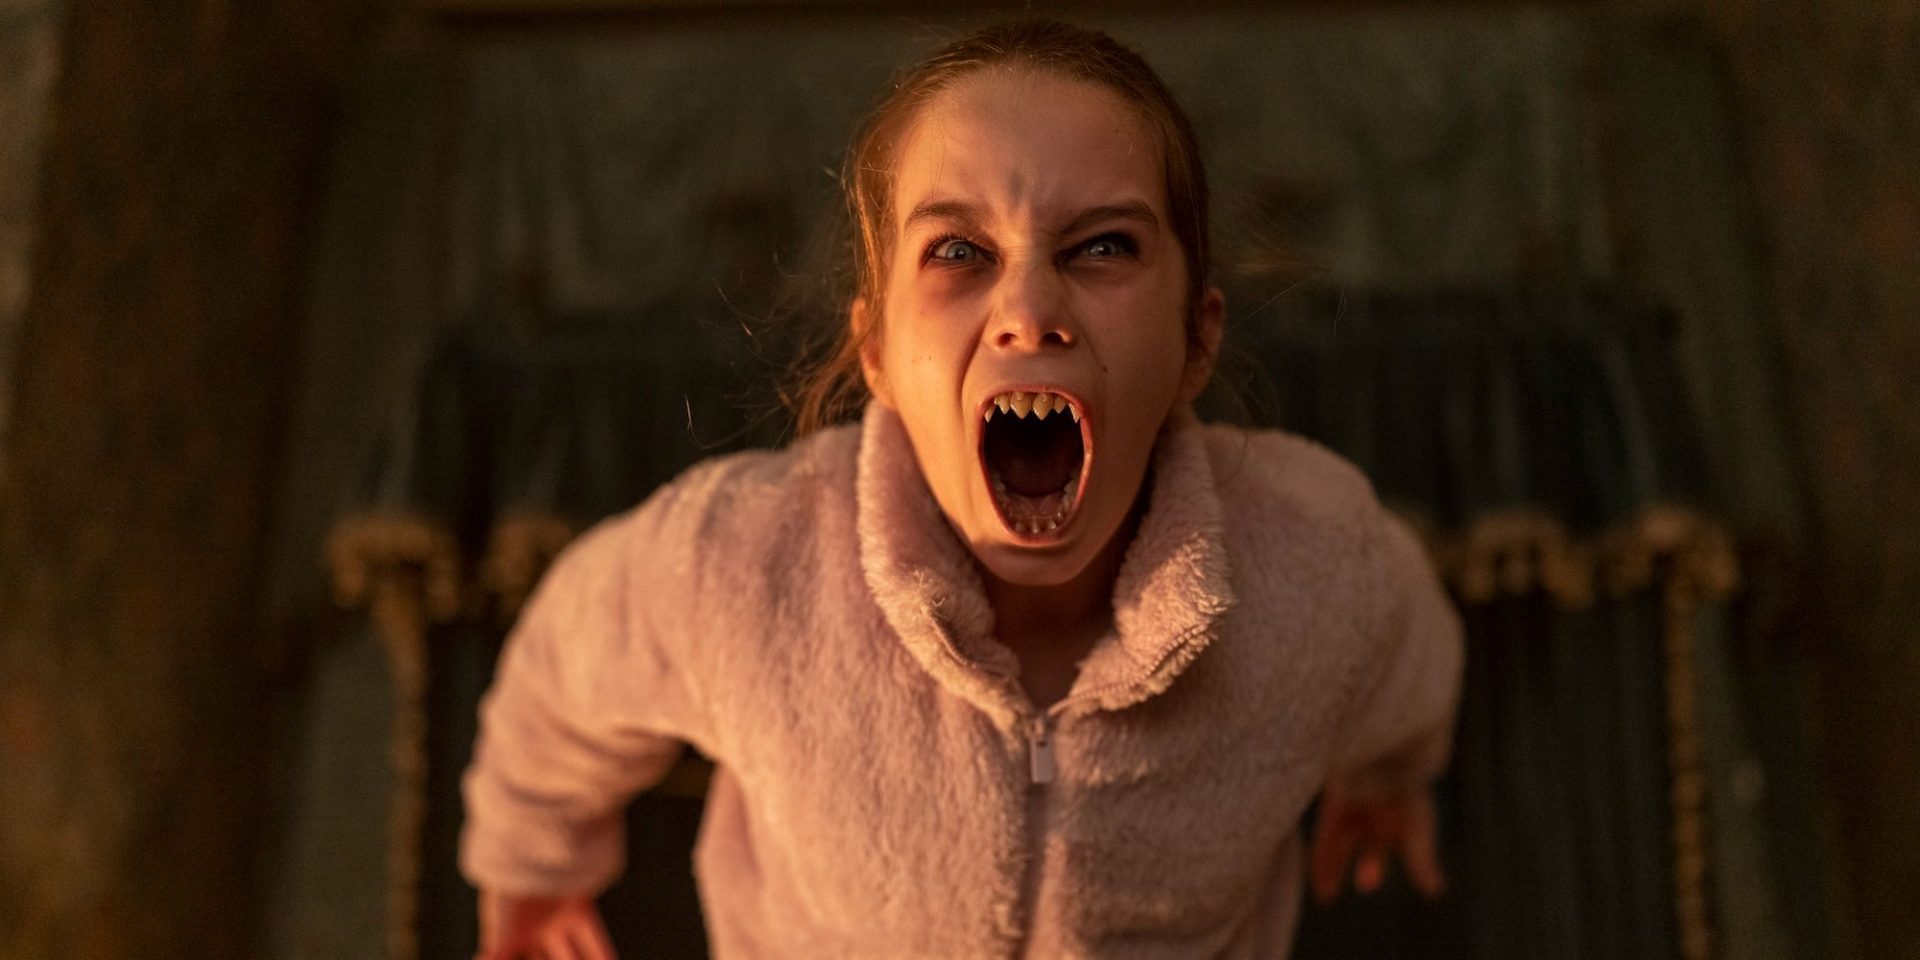 Yeni Vampir Filmi Gişe Açılışı Hayal Kırıklığına Uğratan Korku Trendini Sürdürüyor